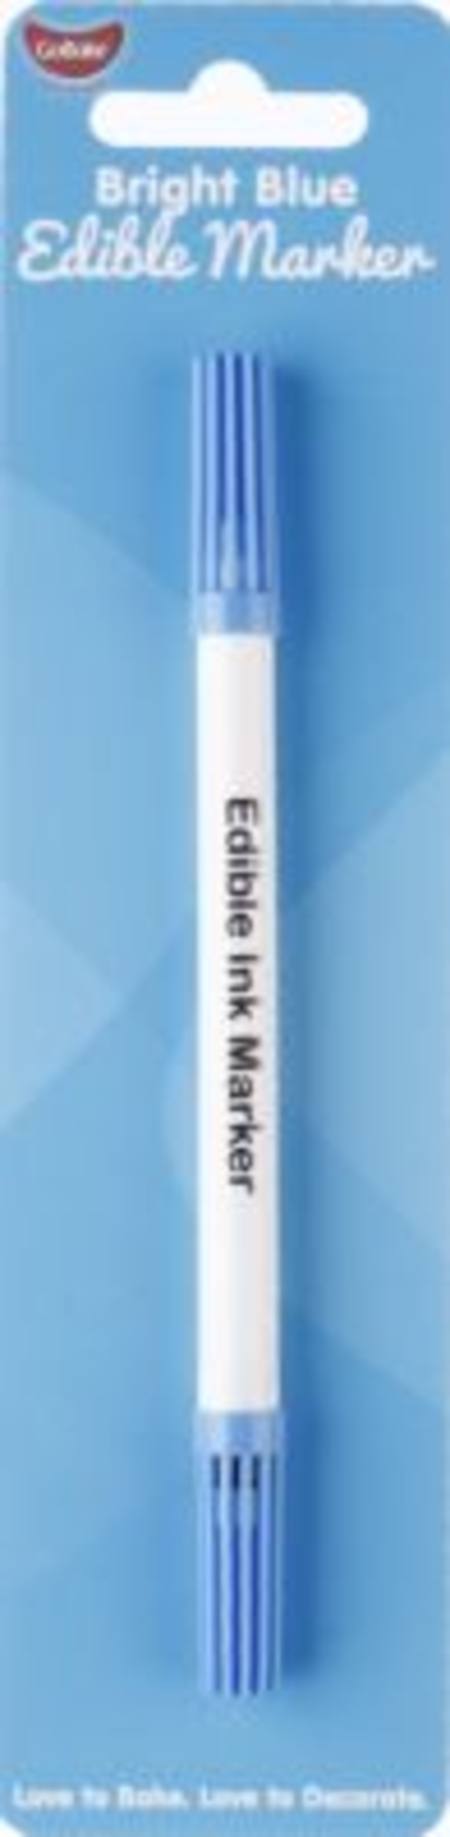 Buy Edible Marker Pen Bright Blue in NZ. 